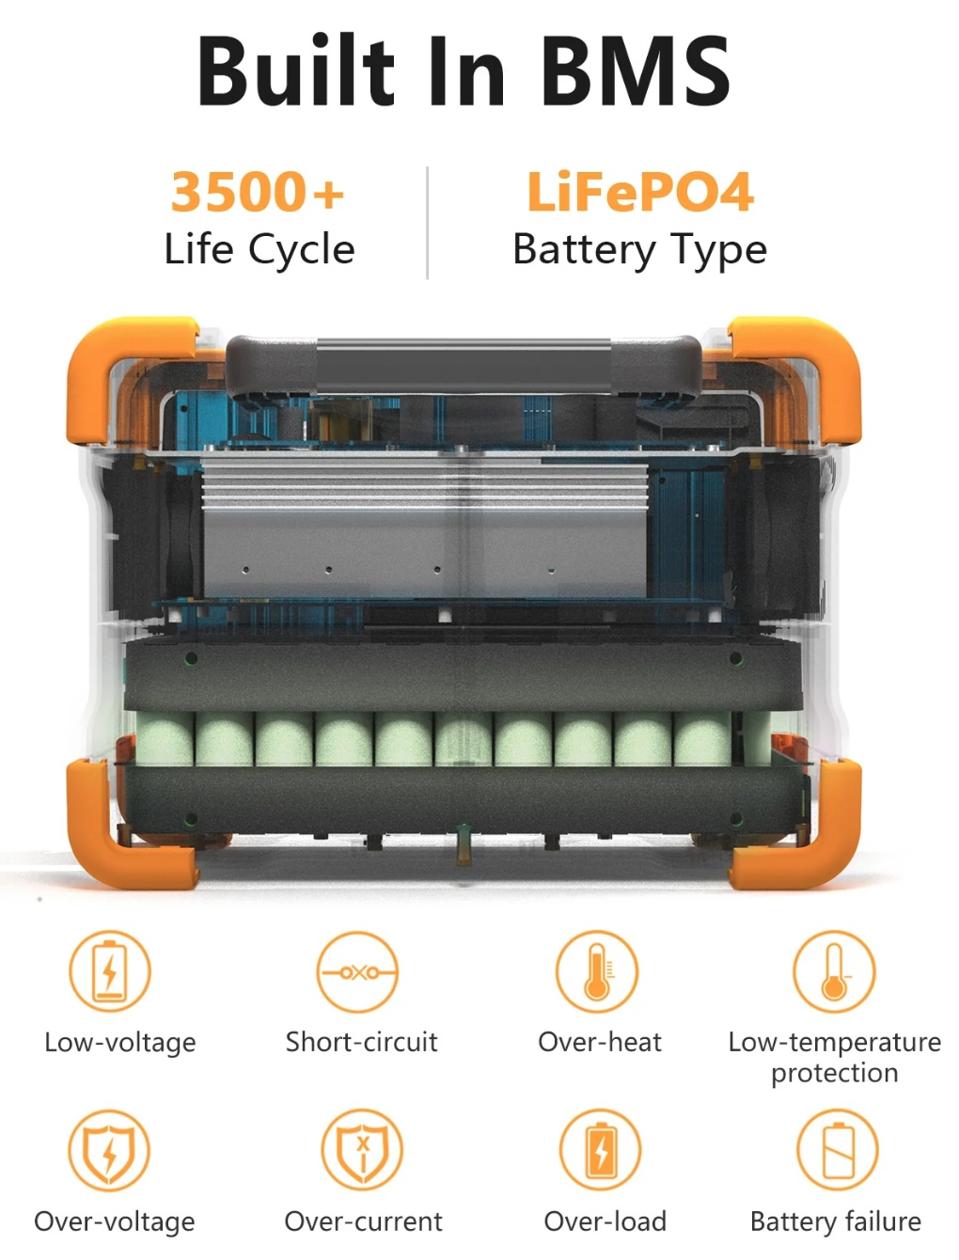 Pecron sangat memperhatikan keamanan, termasuk penggunaan baterai LiFePO4.